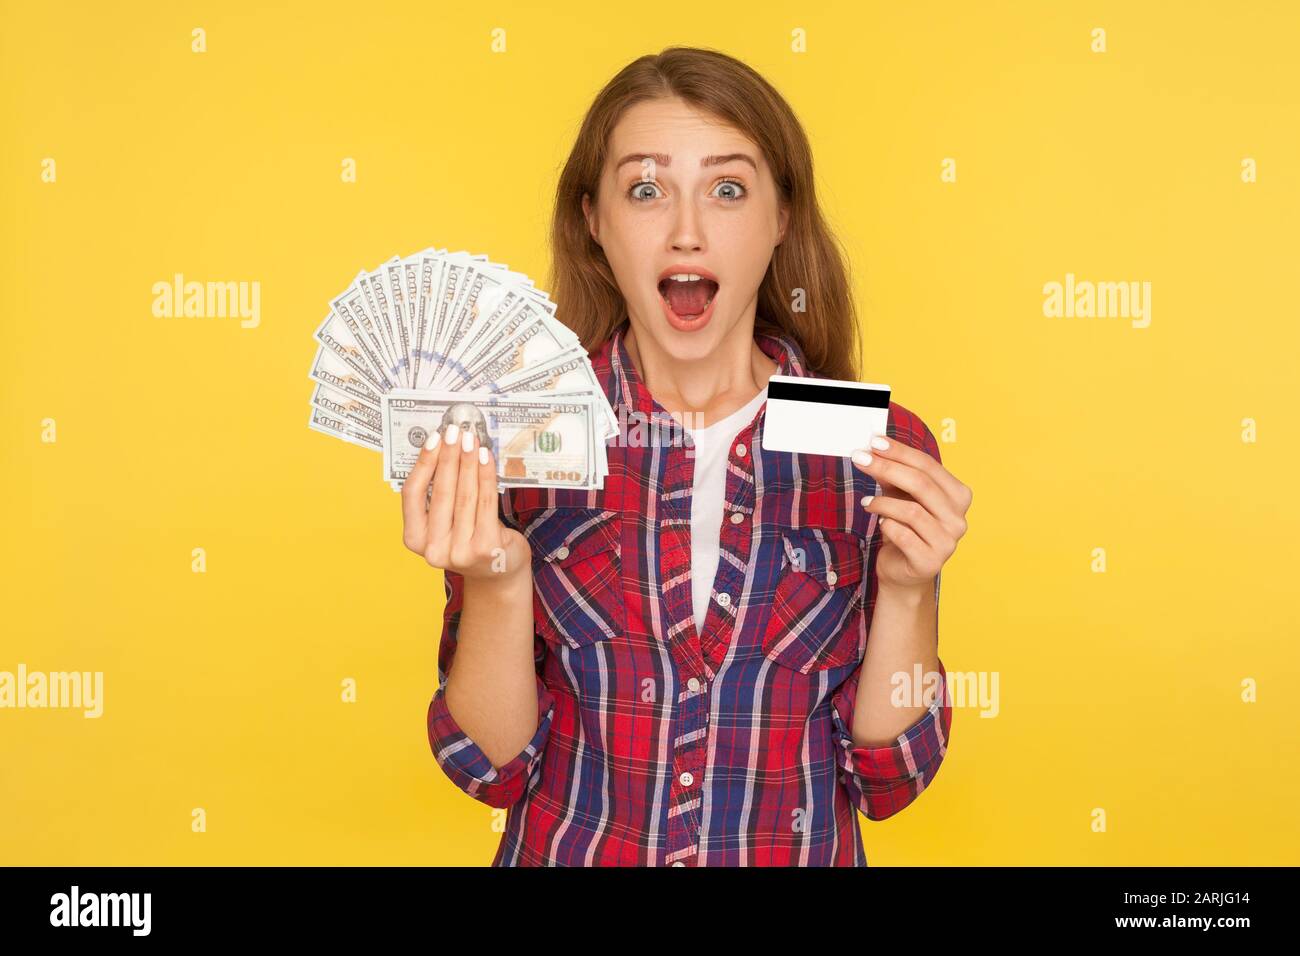 Une heureuse fille de gingembre enchantée dans une chemise debout avec une carte bancaire en plastique et des billets en dollars dans ses mains, regardant surpris par l'appareil photo. Indo Banque D'Images